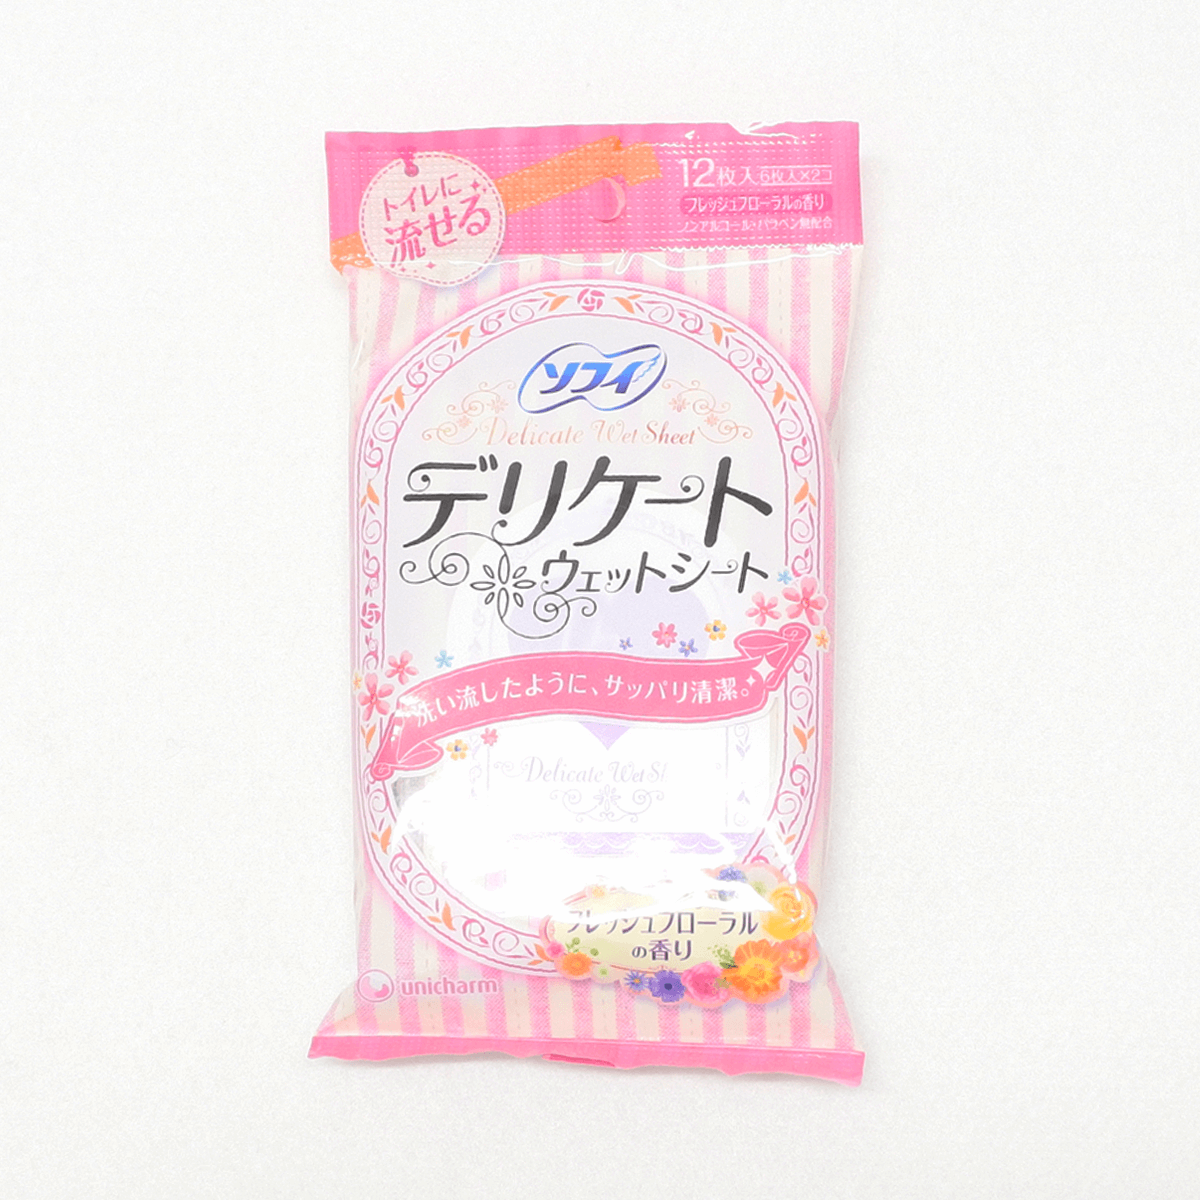 Sofy 蘇菲 生理期潔淨護理濕紙巾(清新花香) 6抽×2包